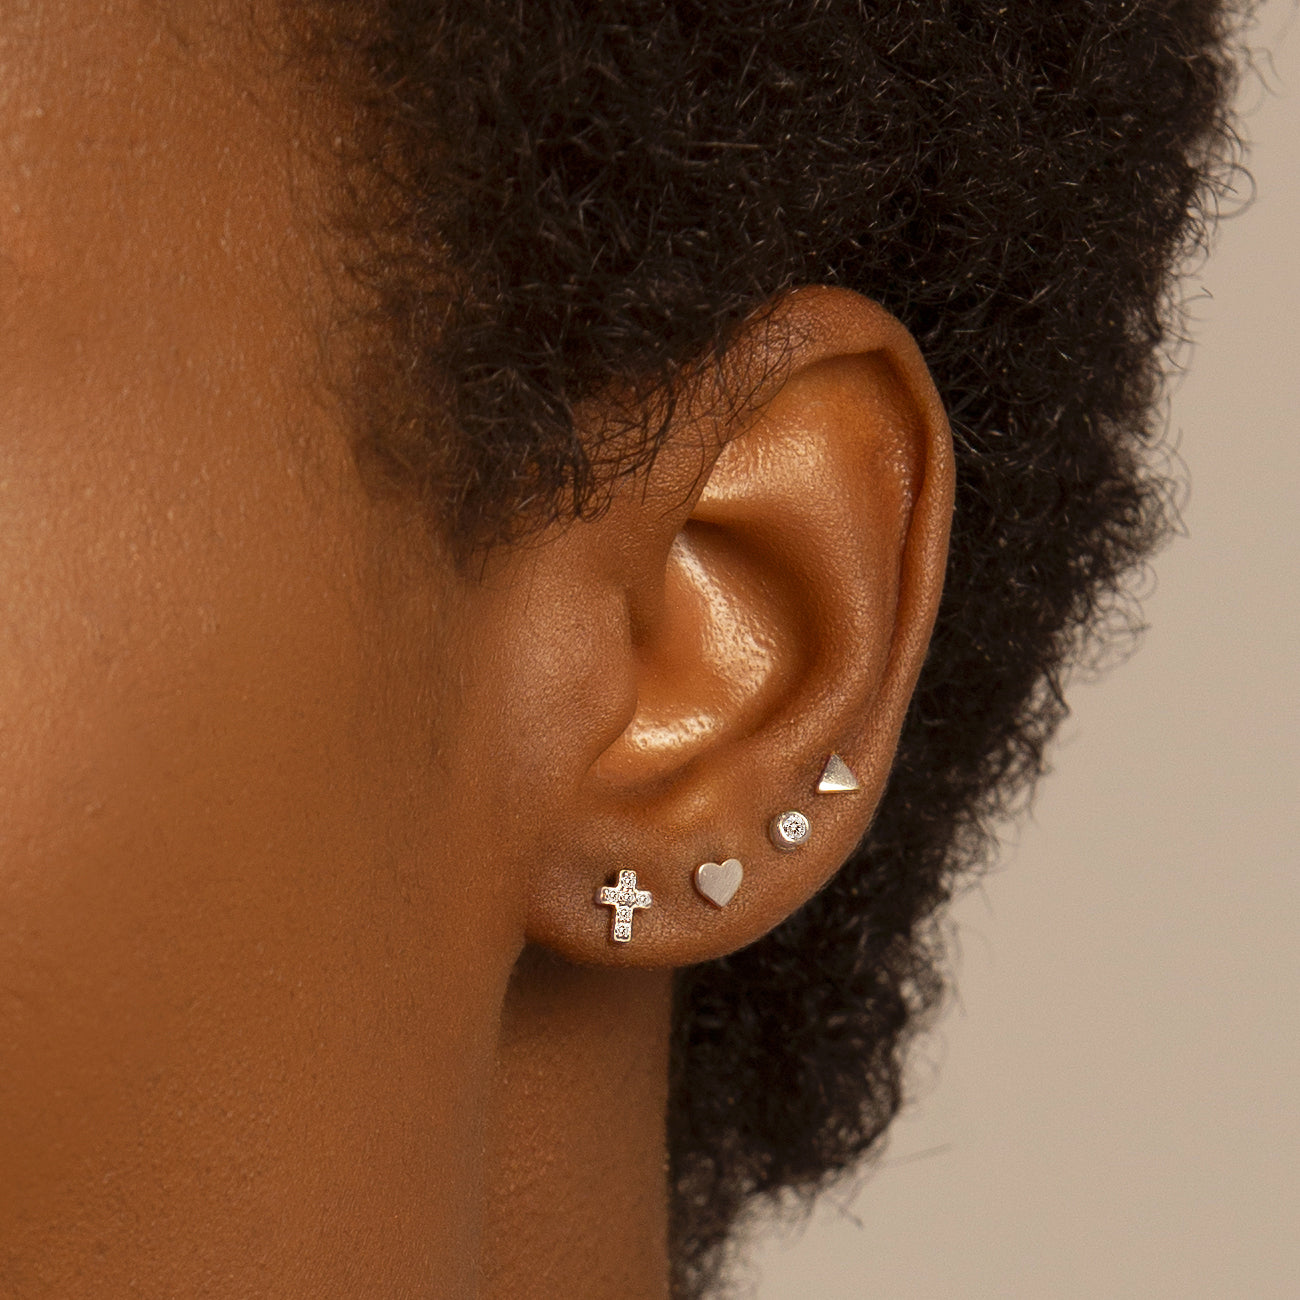 Meissa Sterling Silver Stud Earrings for Women Sterling Silver Screw Back  Earrings Cute Safety Back Studs Hypoallergenic Earrings for Piercings (D)